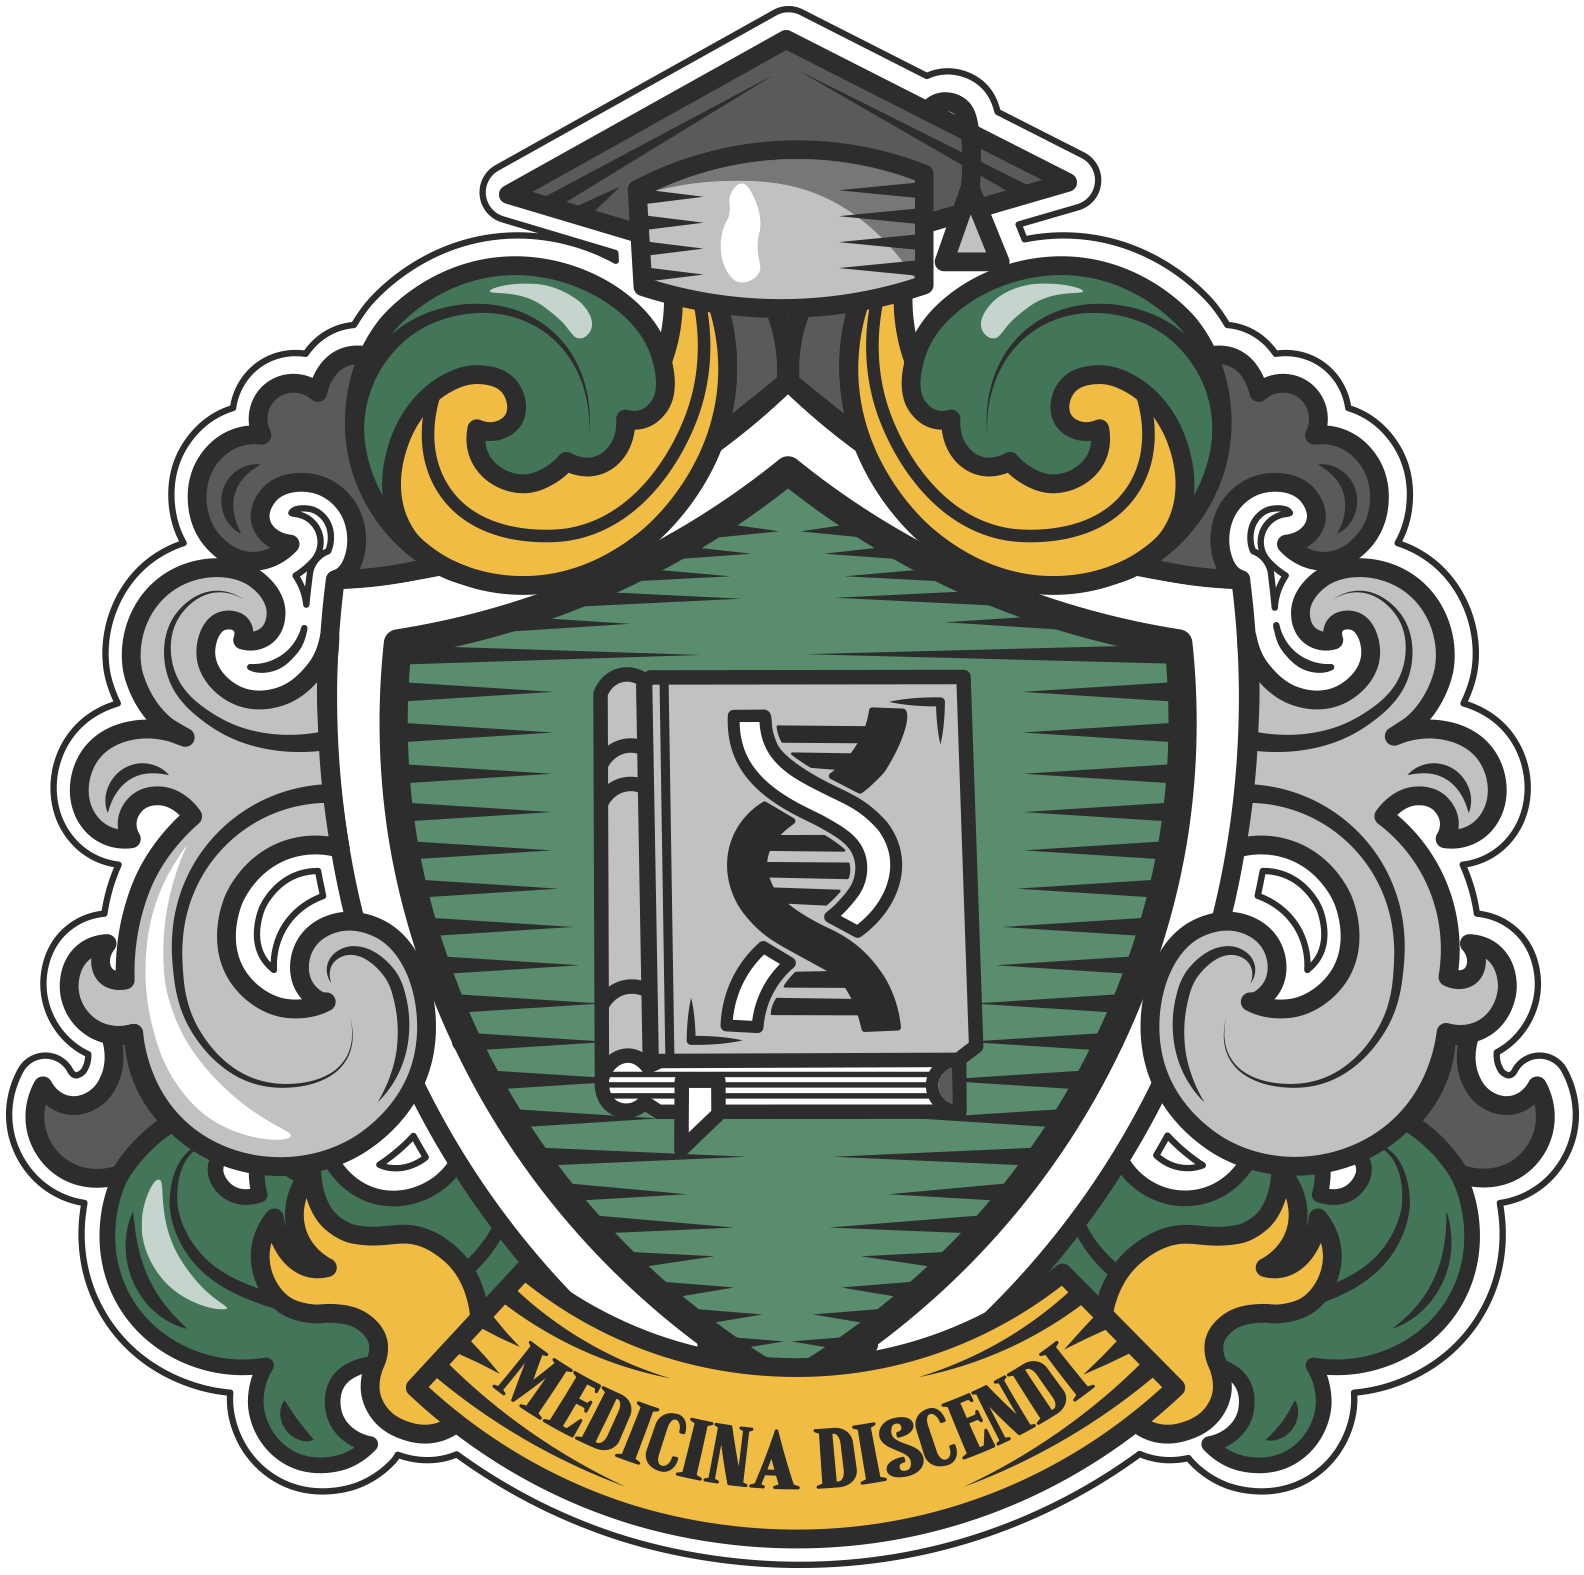 герб онлайн-университета медицины